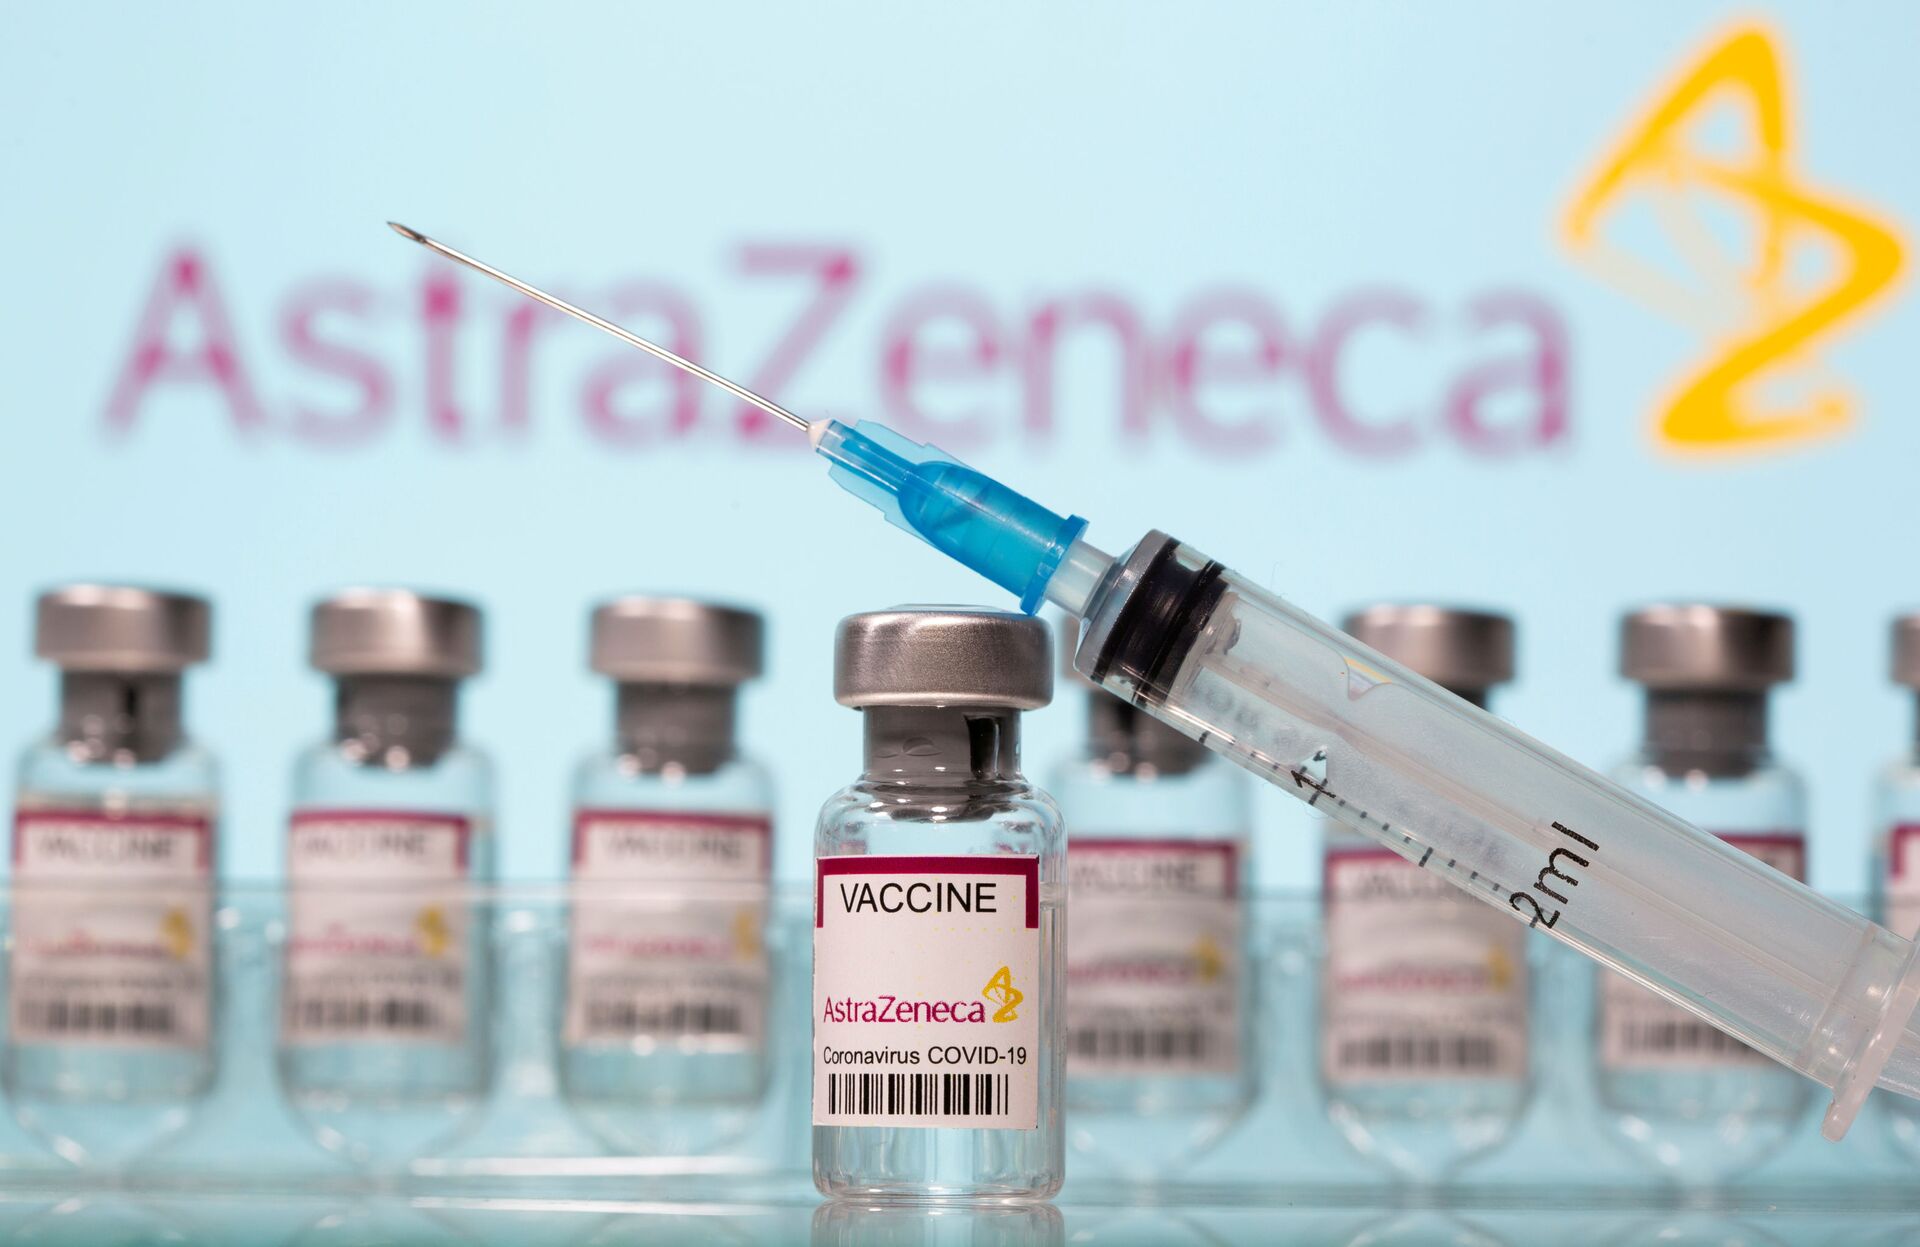 Venezuela não aprovará o uso da vacina da AstraZeneca contra COVID-19 - Sputnik Brasil, 1920, 15.03.2021